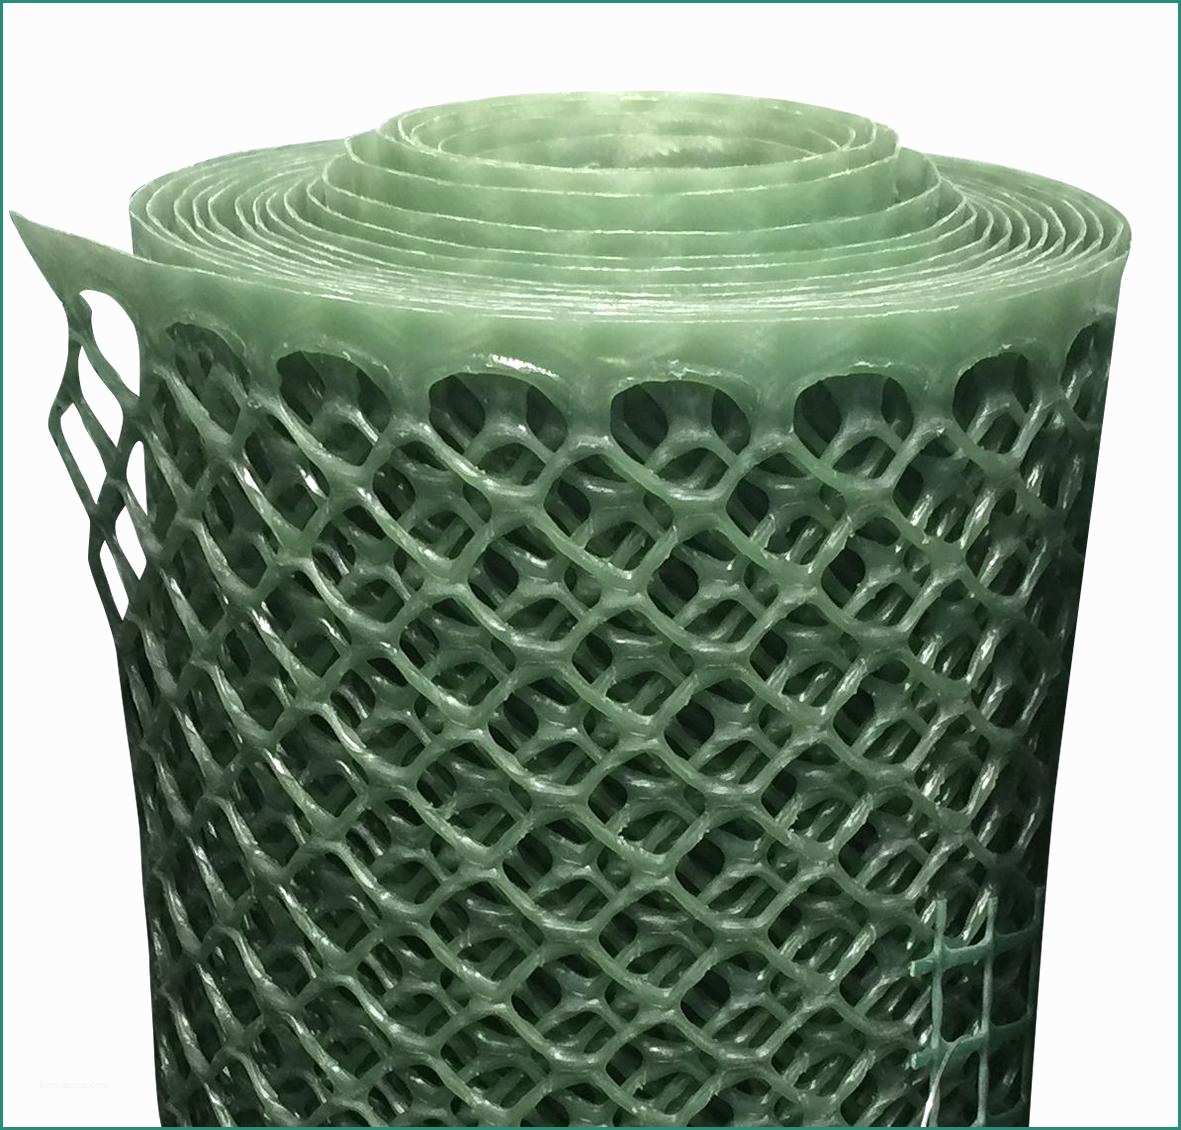 Rete Recinzione Bricoman E Rete Plastica Maglia Esagonale 1x5 M 15x15 Mm Verde Bri An